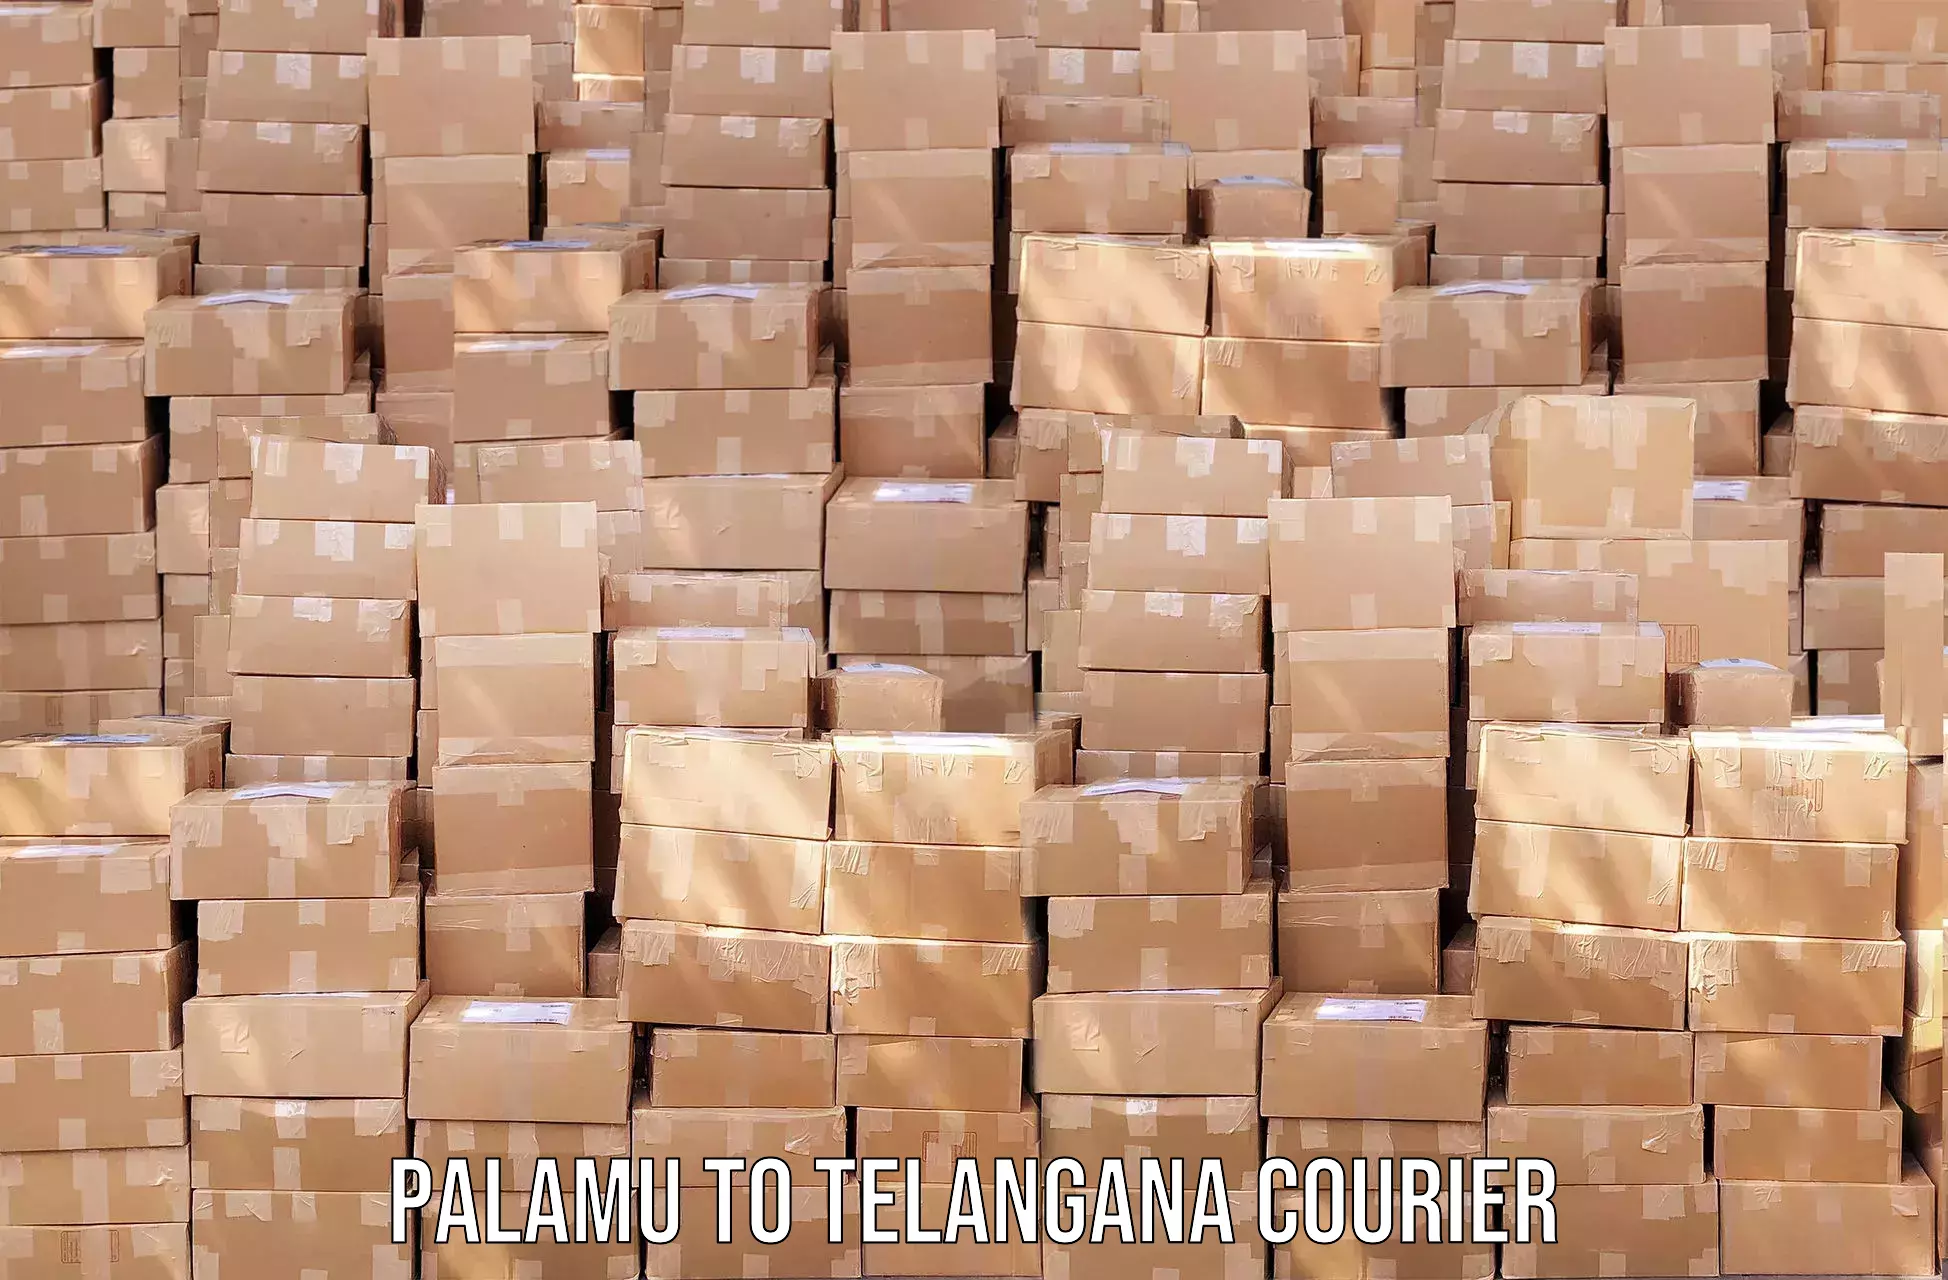 Courier dispatch services Palamu to Yellandu